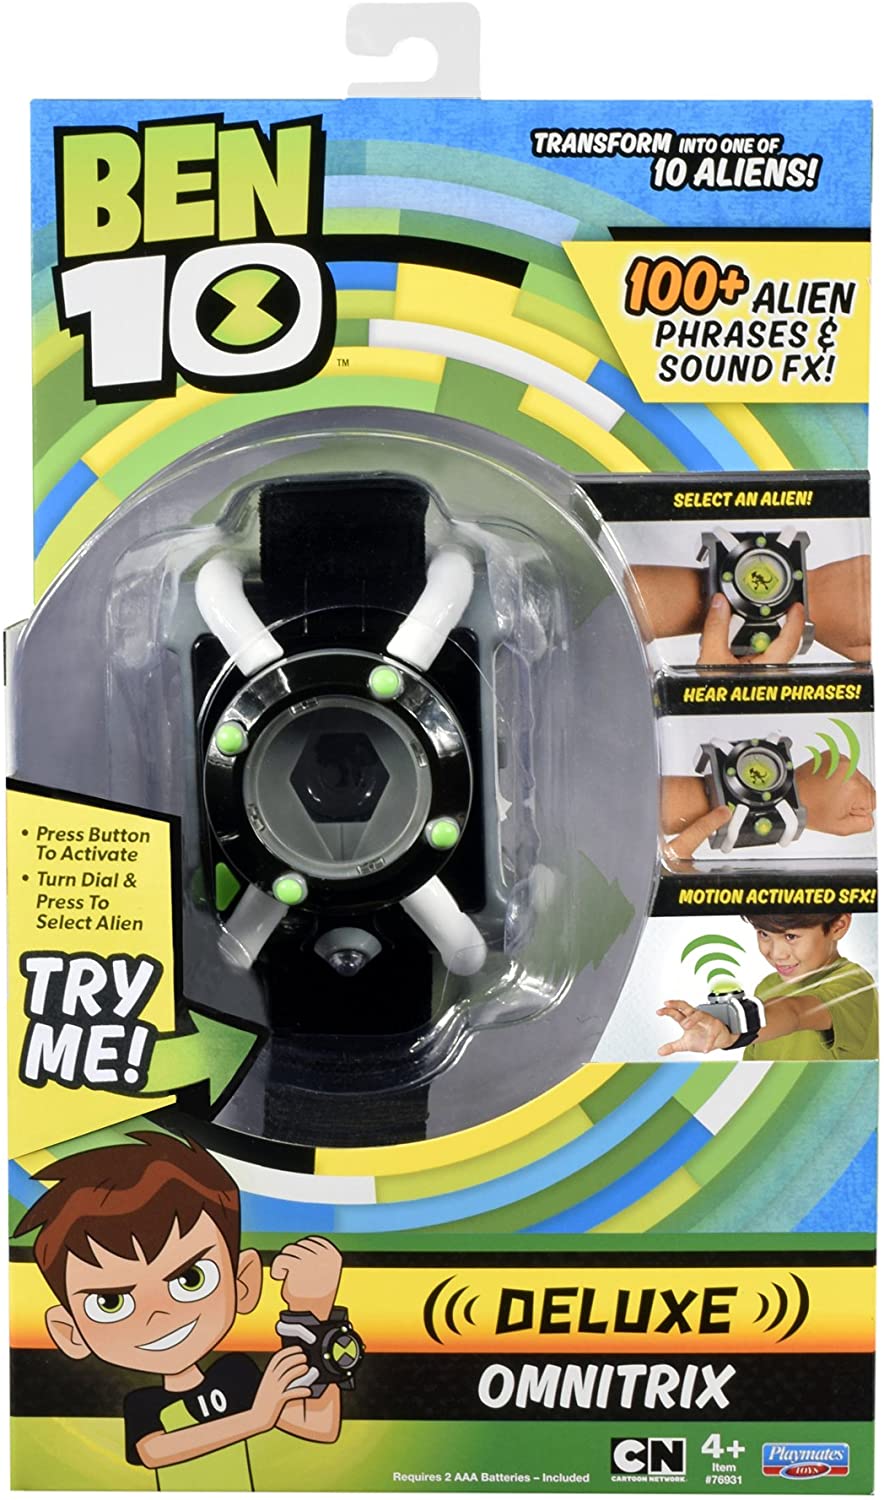 New Ben 10 Omnitrix Toy | lupon.gov.ph